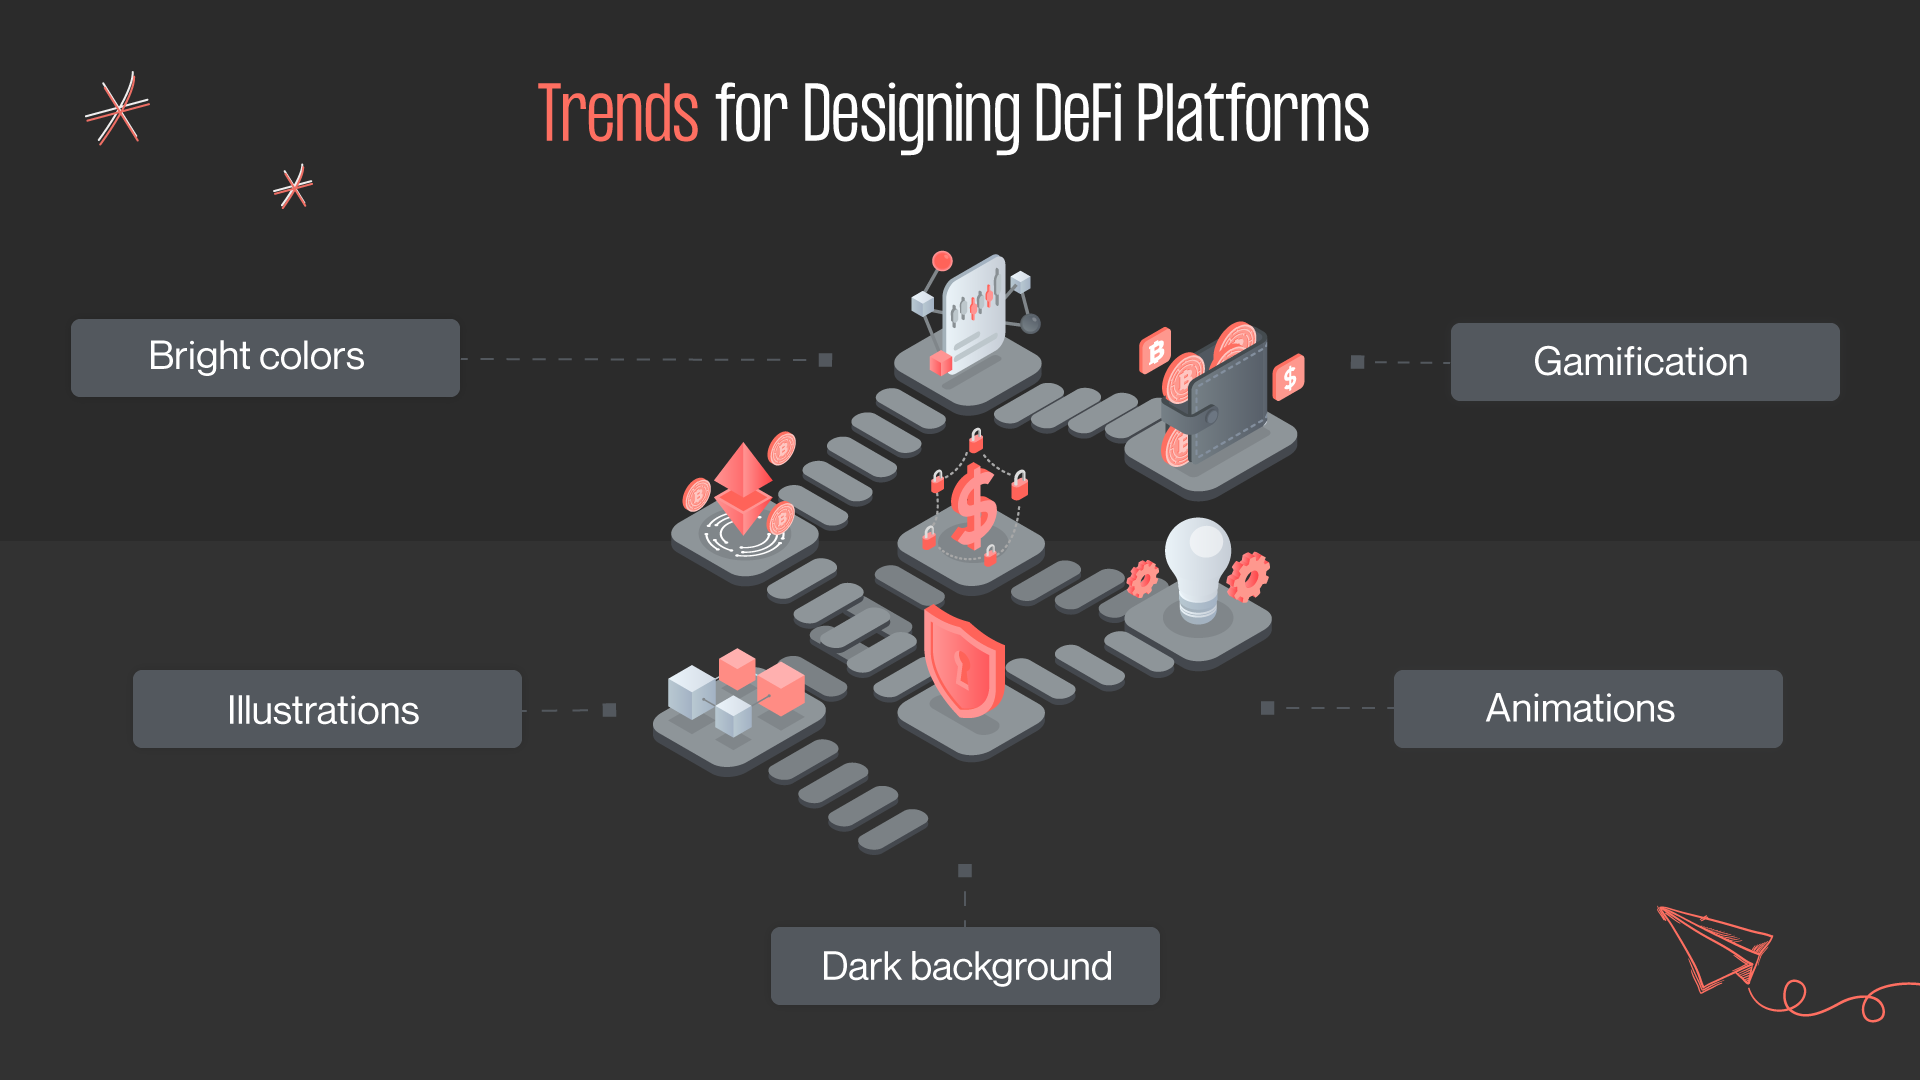 DeFi design trends